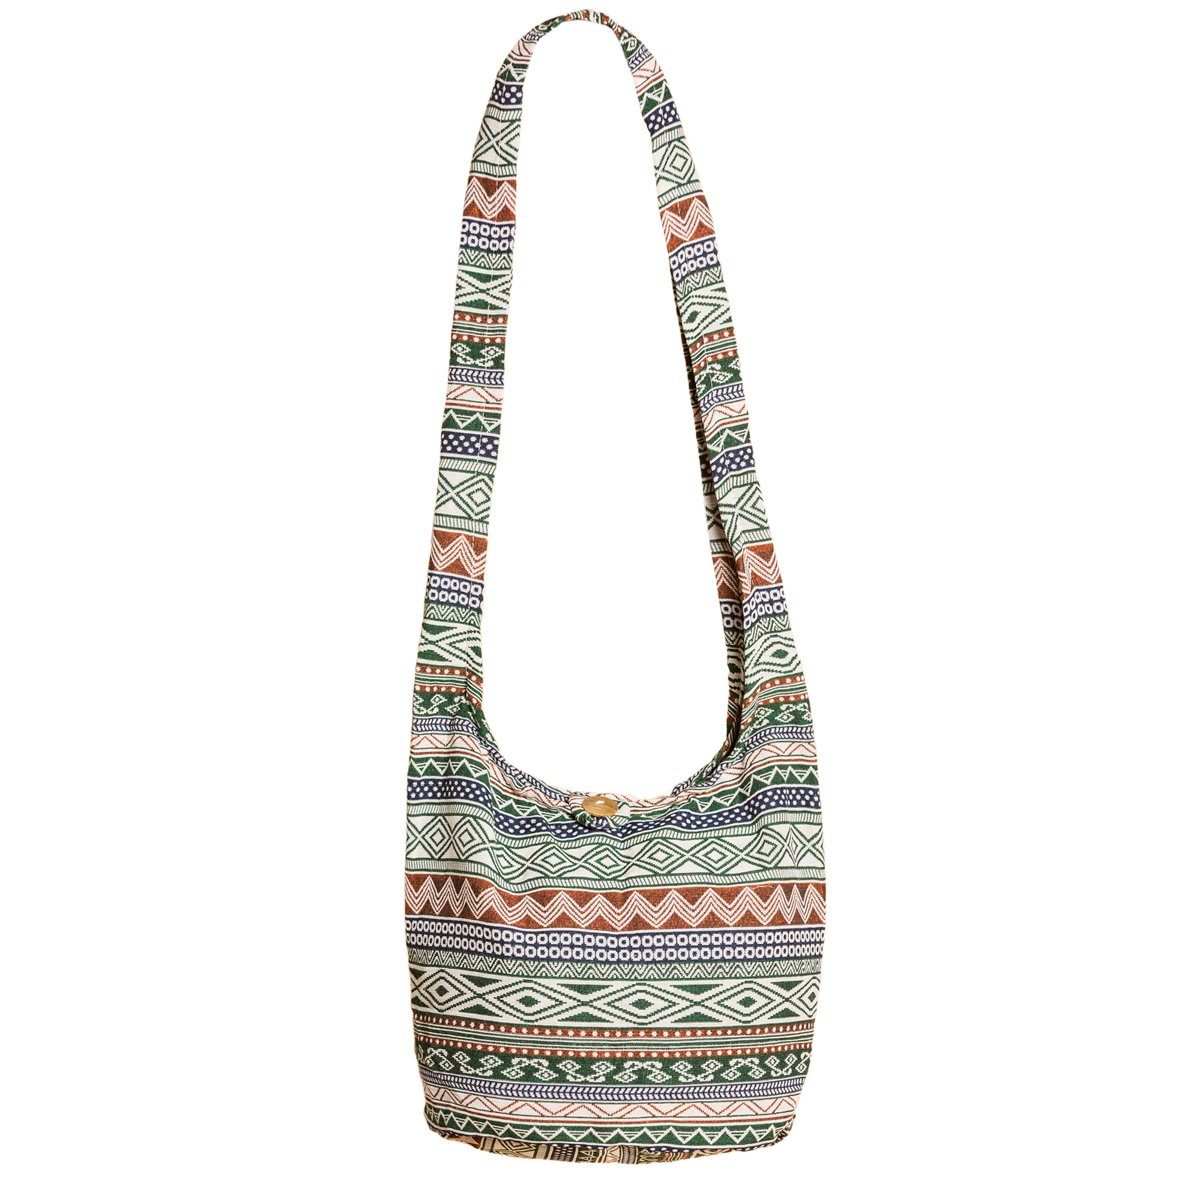 PANASIAM Strandtasche Schulterbeutel in gewebten Designs aus 100 % Baumwolle Umhängetasche, In 2 Größen Beuteltasche auch als Wickeltasche und Handtasche geeignet Grünton